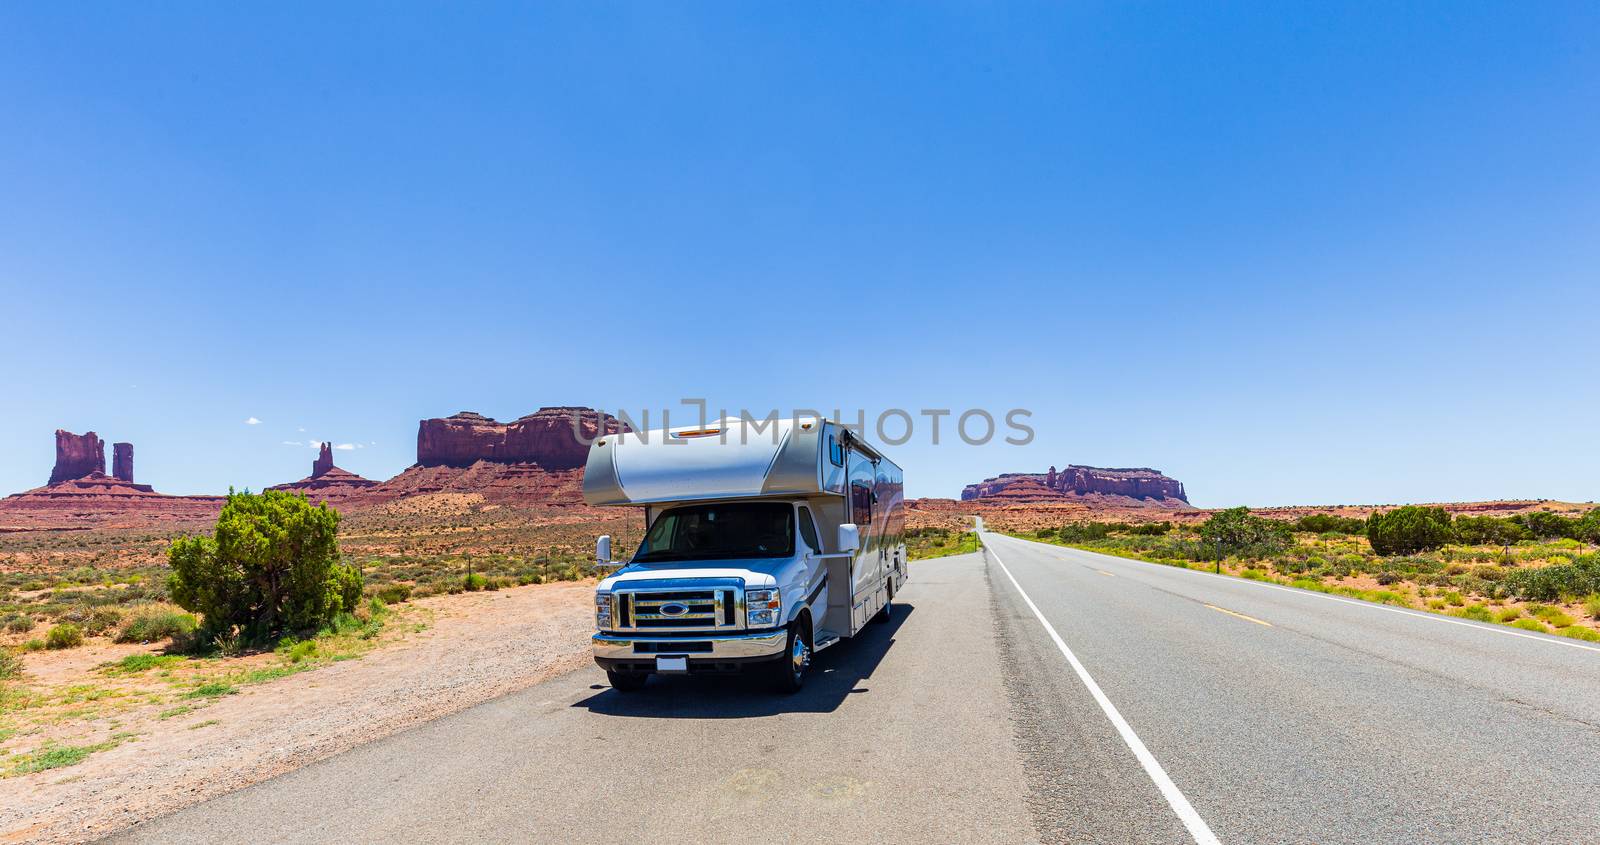 Camper Van on scenic drive in Monument Valley Navajo Park, Utah, by mkenwoo